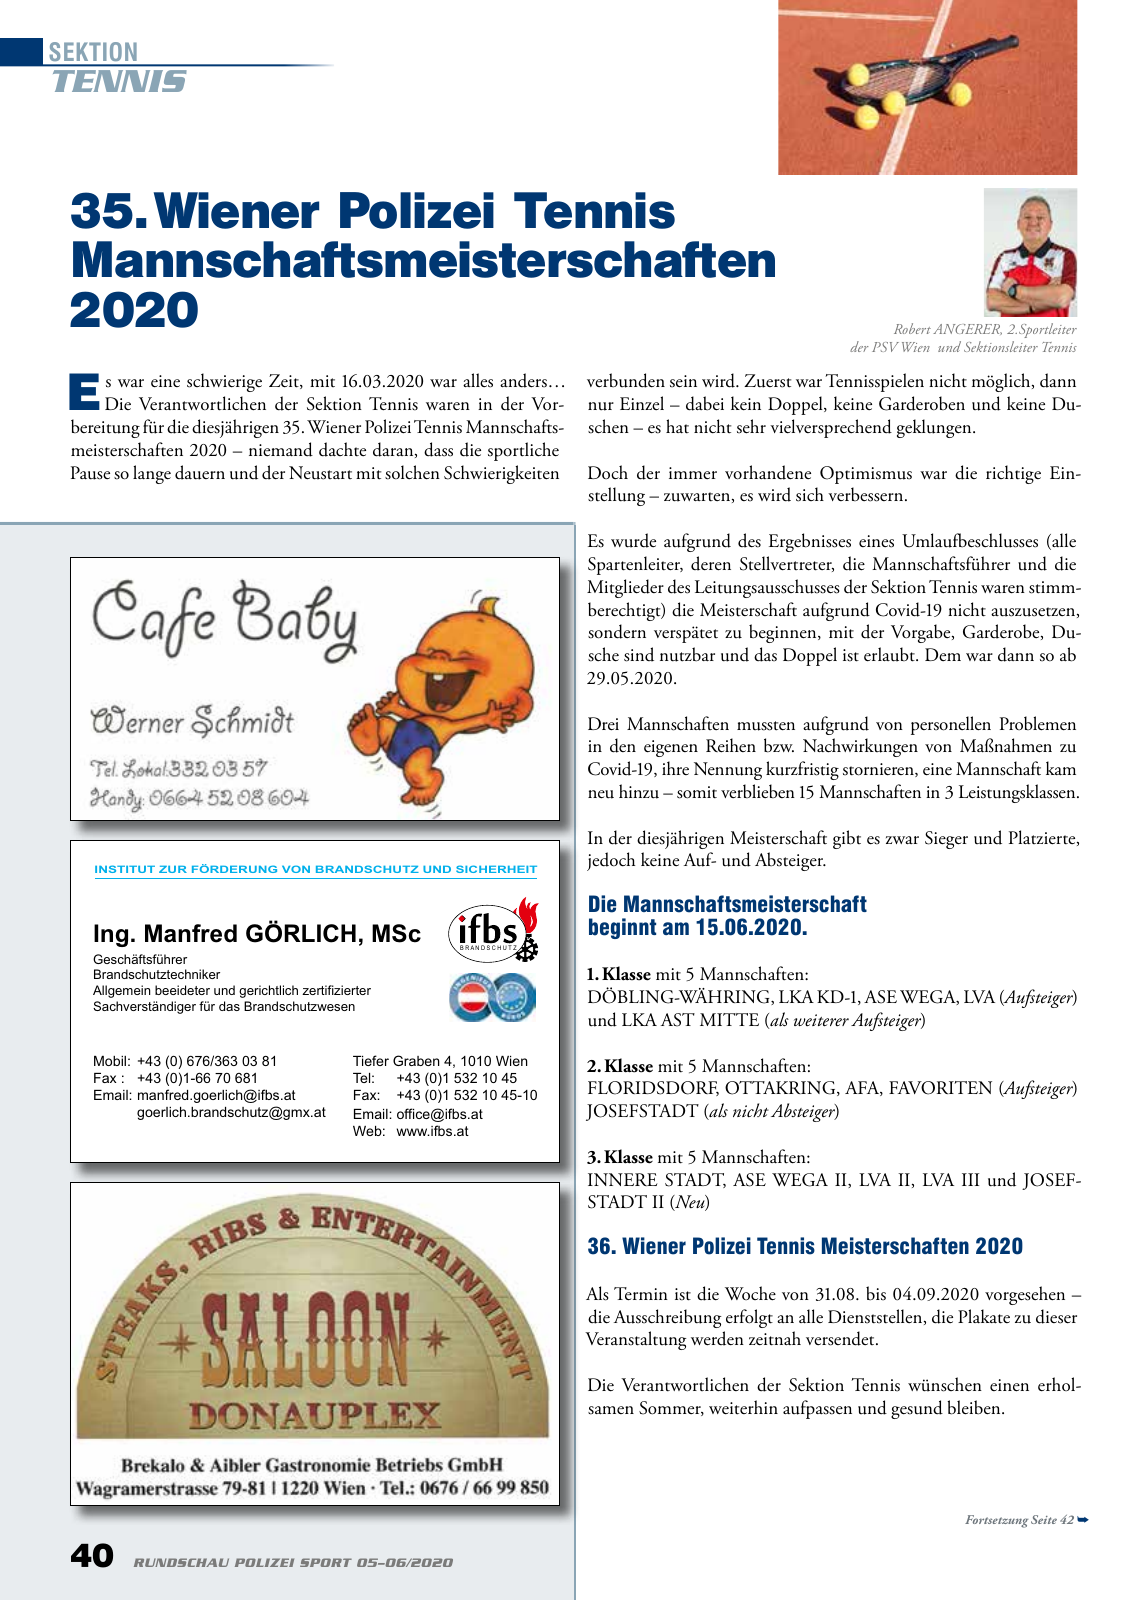 Vorschau Rundschau Polizei Sport 05-06/2020 Seite 40